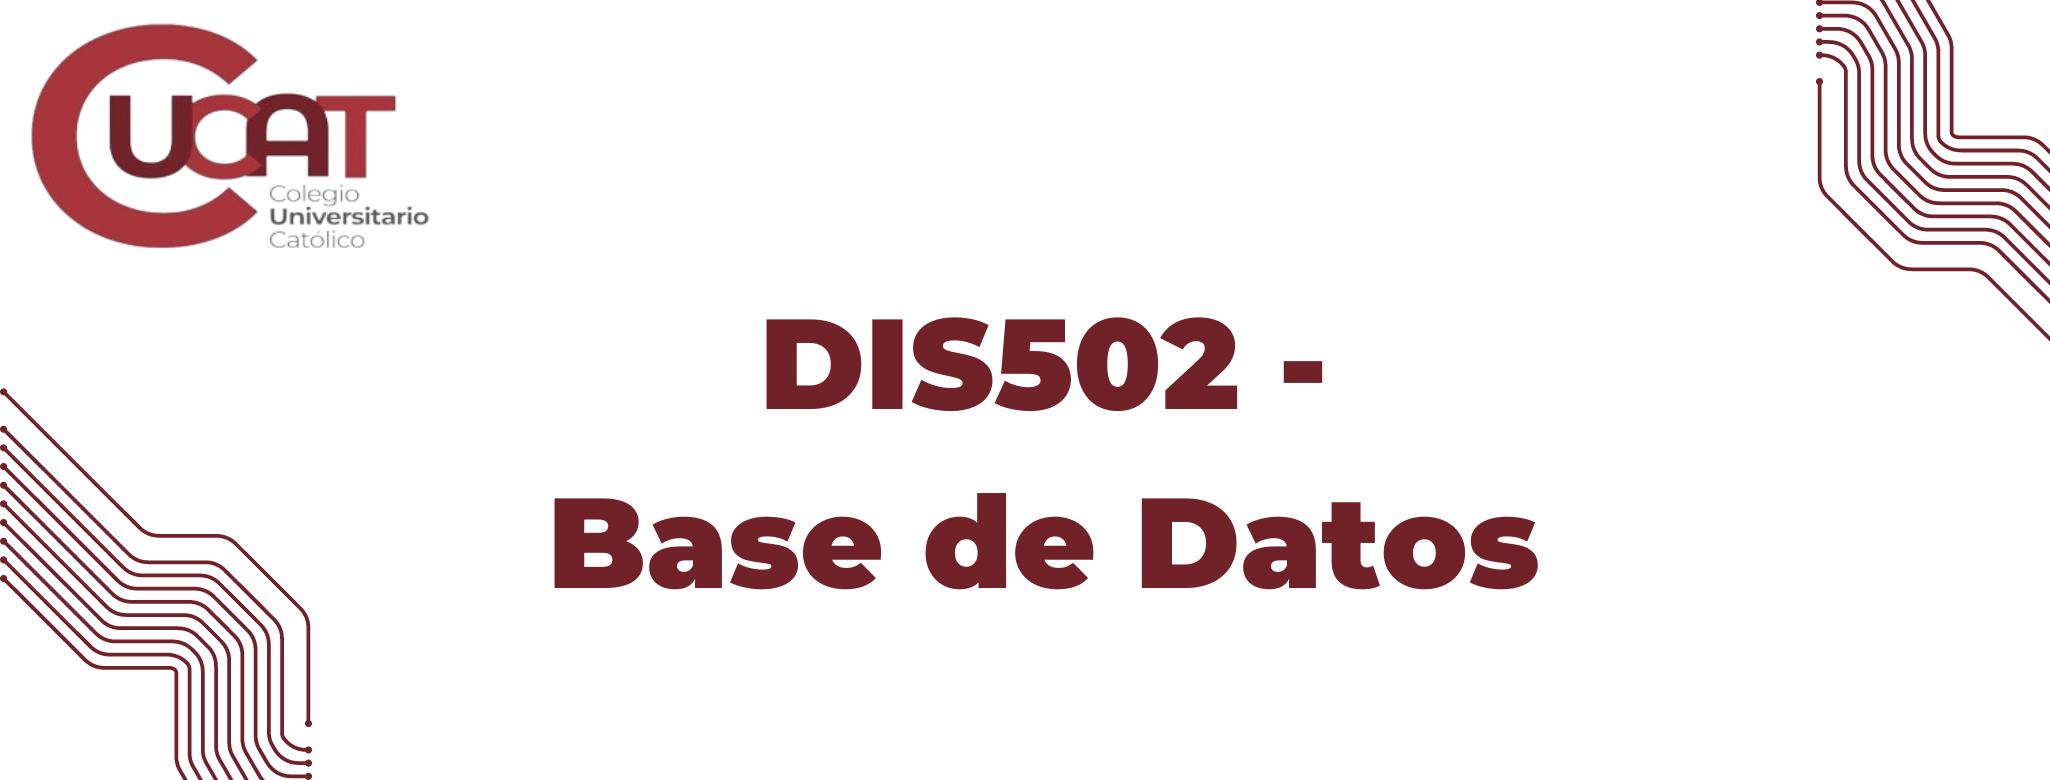 DIS502-Base de Datos